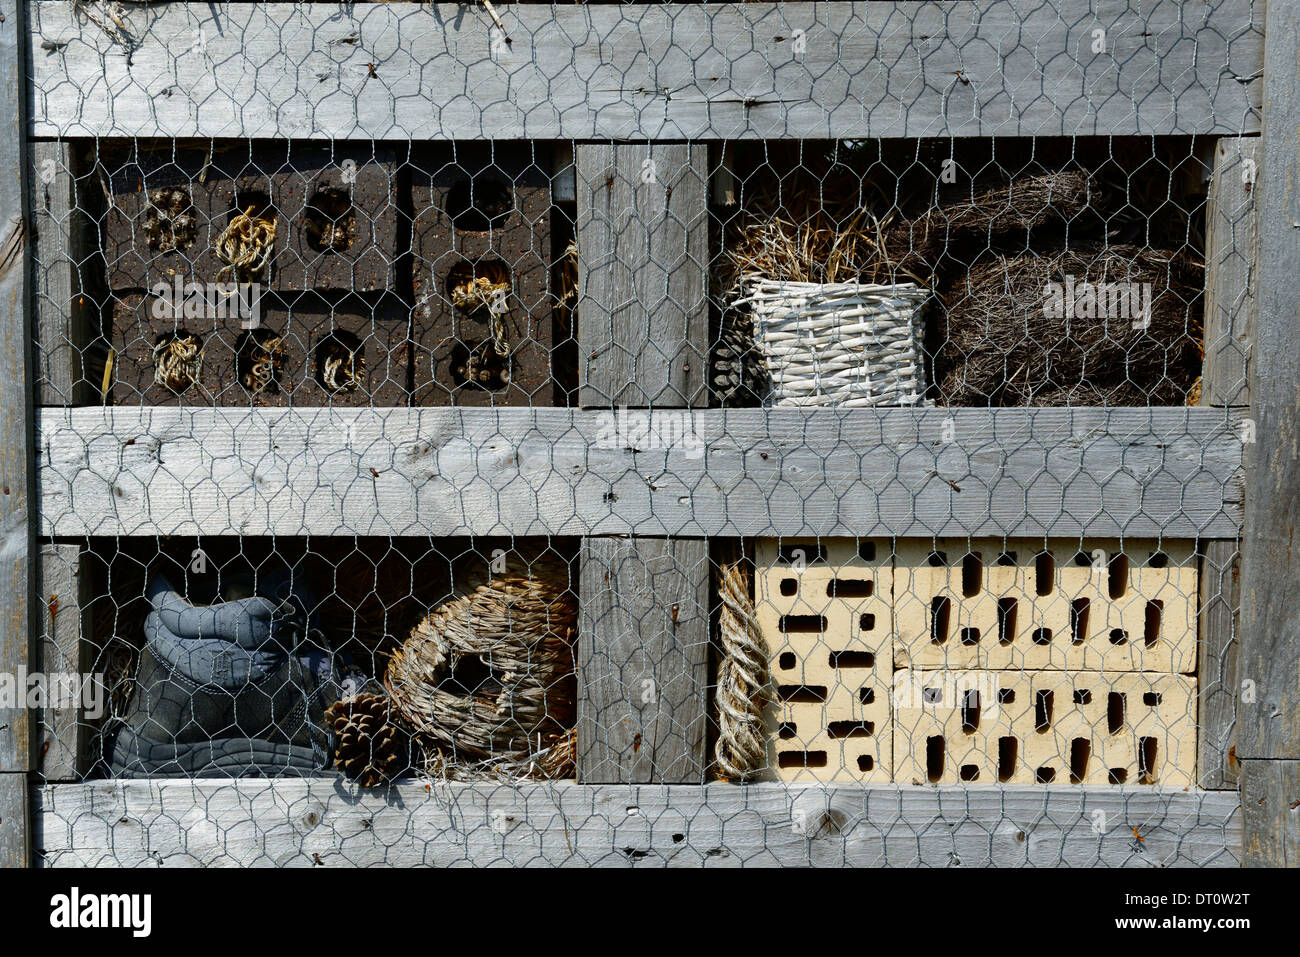 Biene Insektenhotel Hotels Tierwelt freundliche Garten Gartenarbeit gemischte Materialvielfalt Solitäre Bienen Insekten Erhaltung Kasten Oase Stockfoto